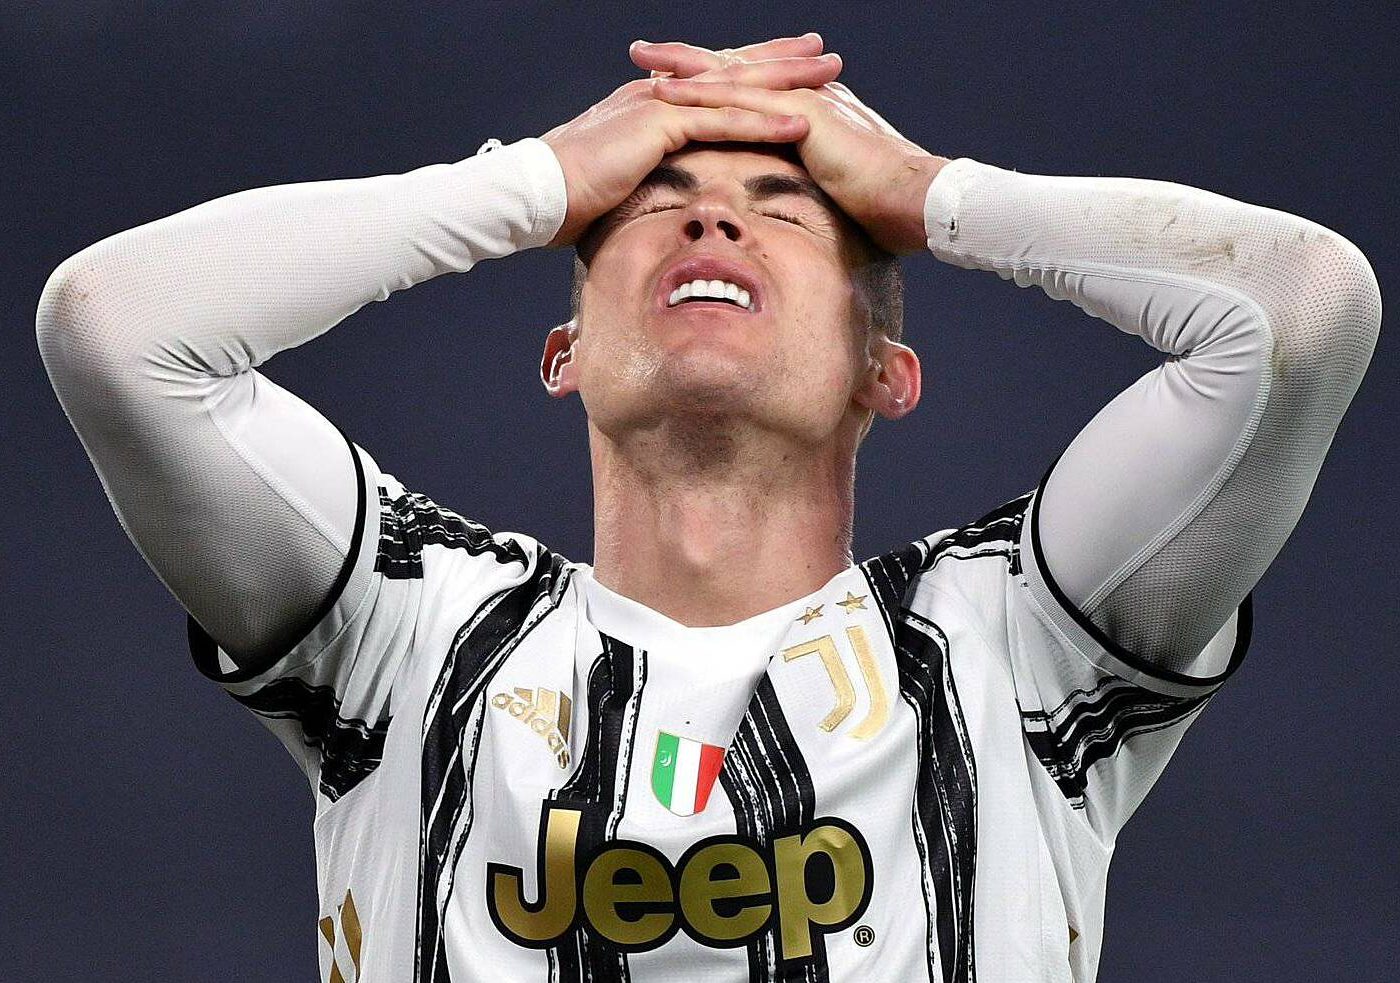 Thị trường chuyển nhượng 11/03/2021: Juve không muốn giữ Ronaldo